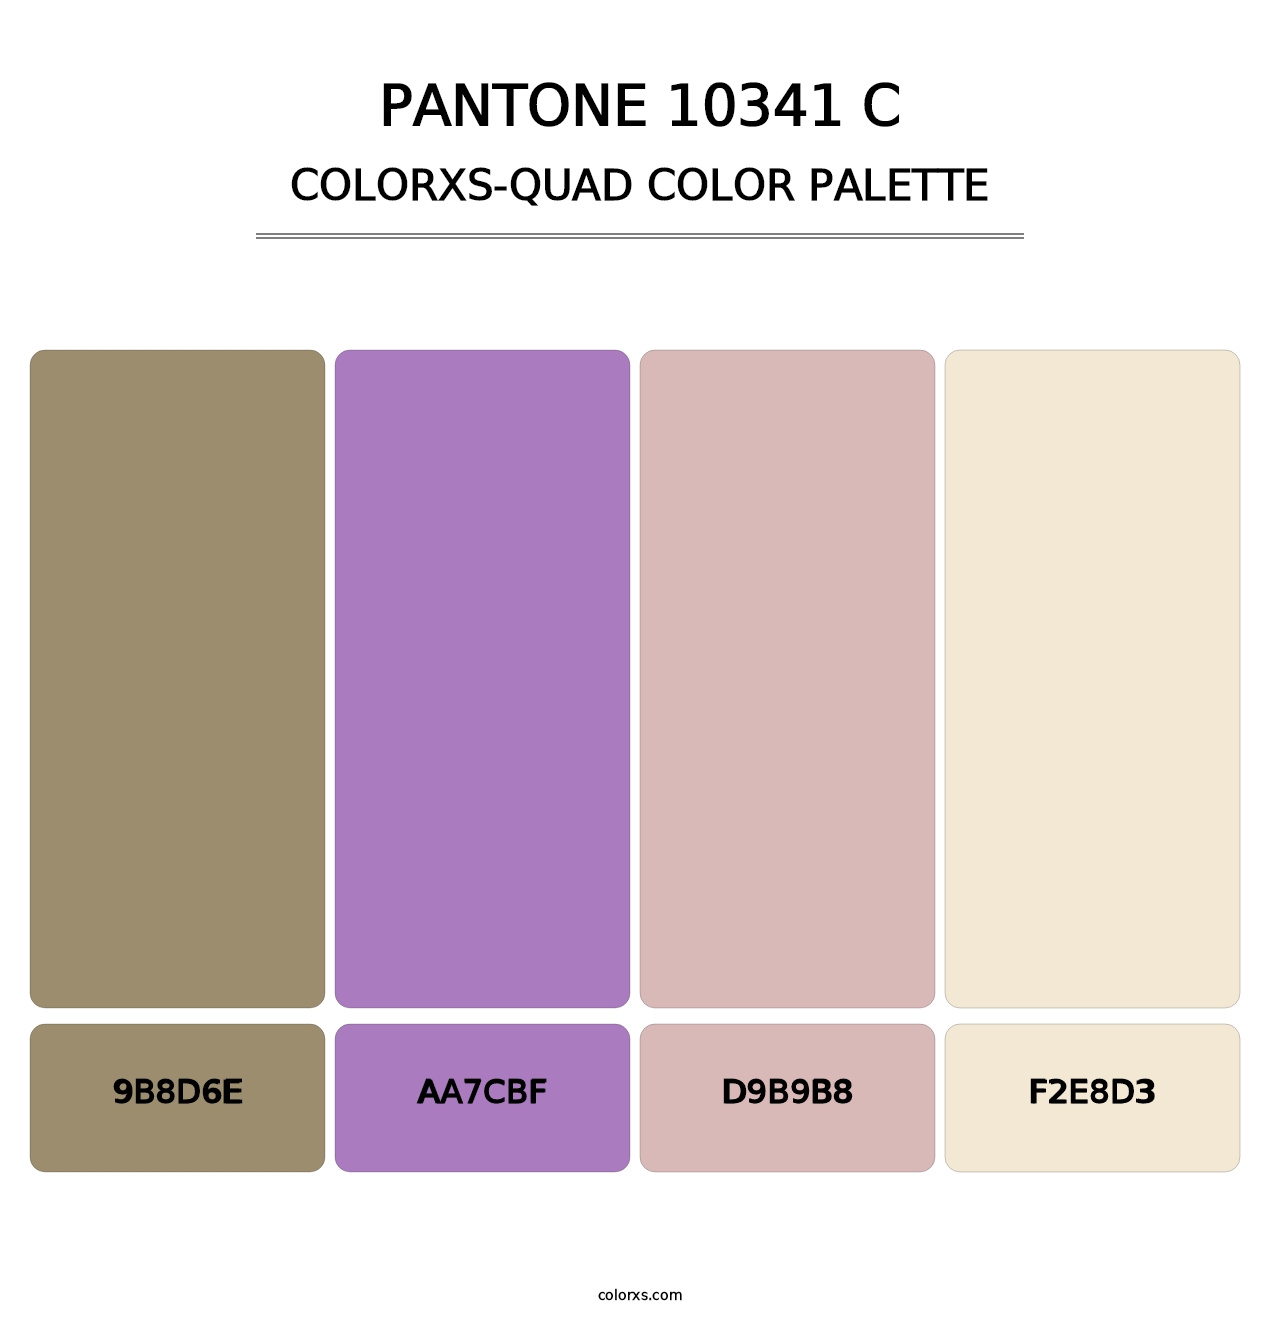 PANTONE 10341 C - Colorxs Quad Palette